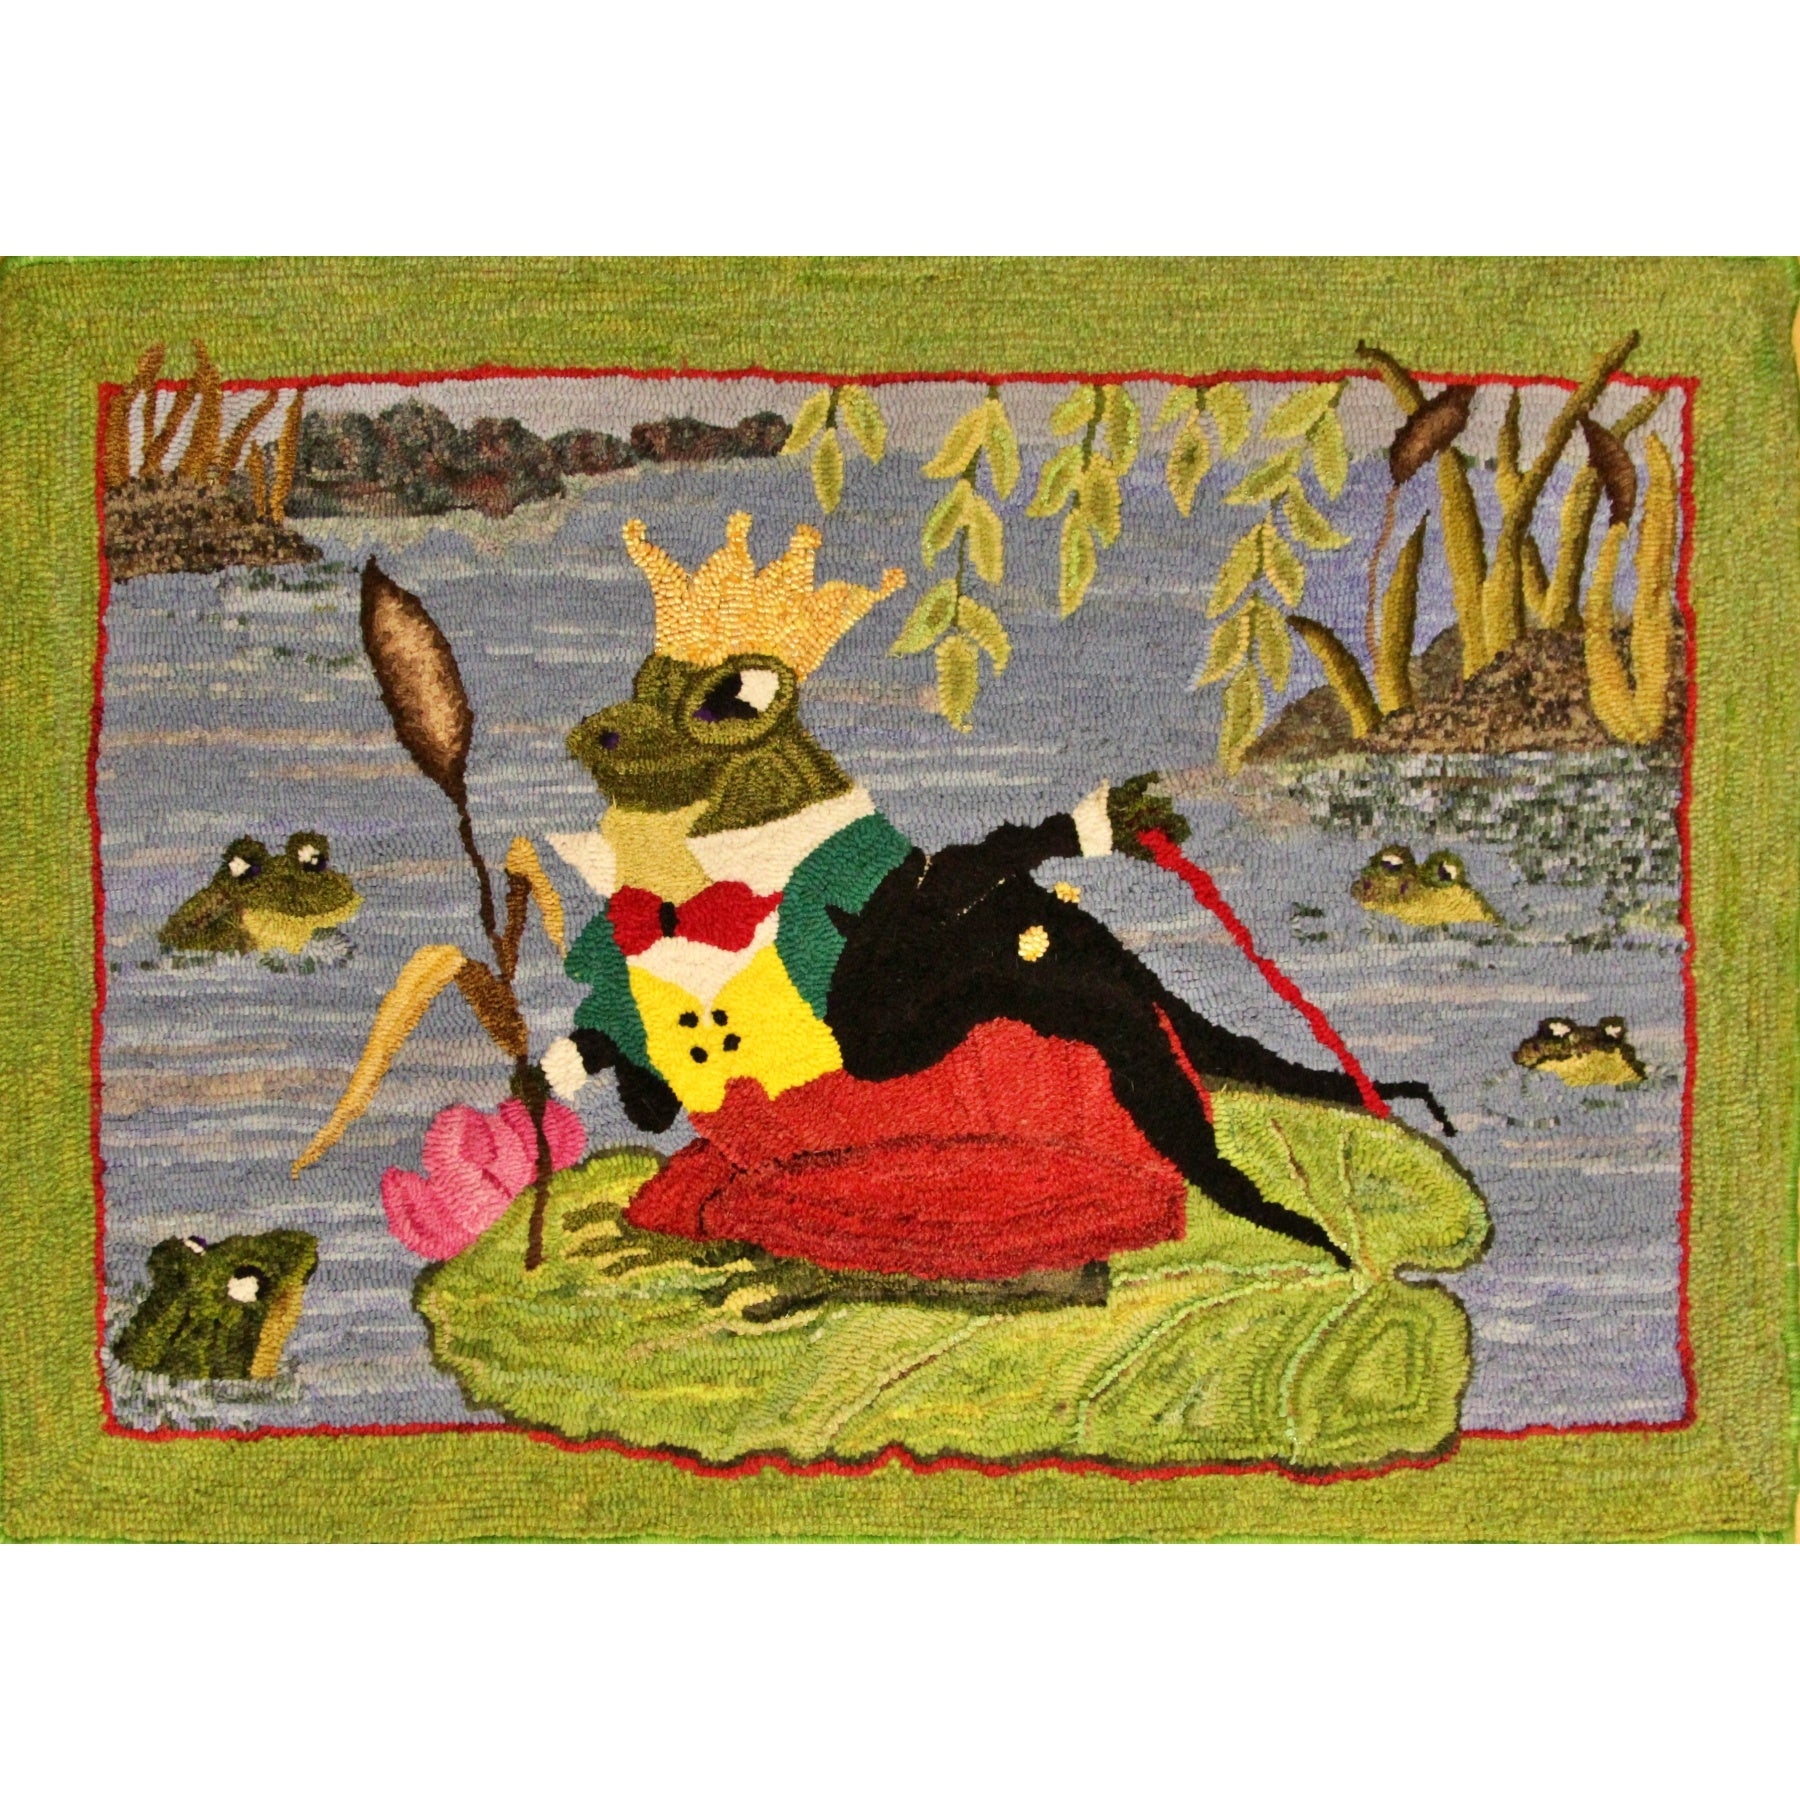 Burgess King Frog, rug hooked by Nancy Zuese